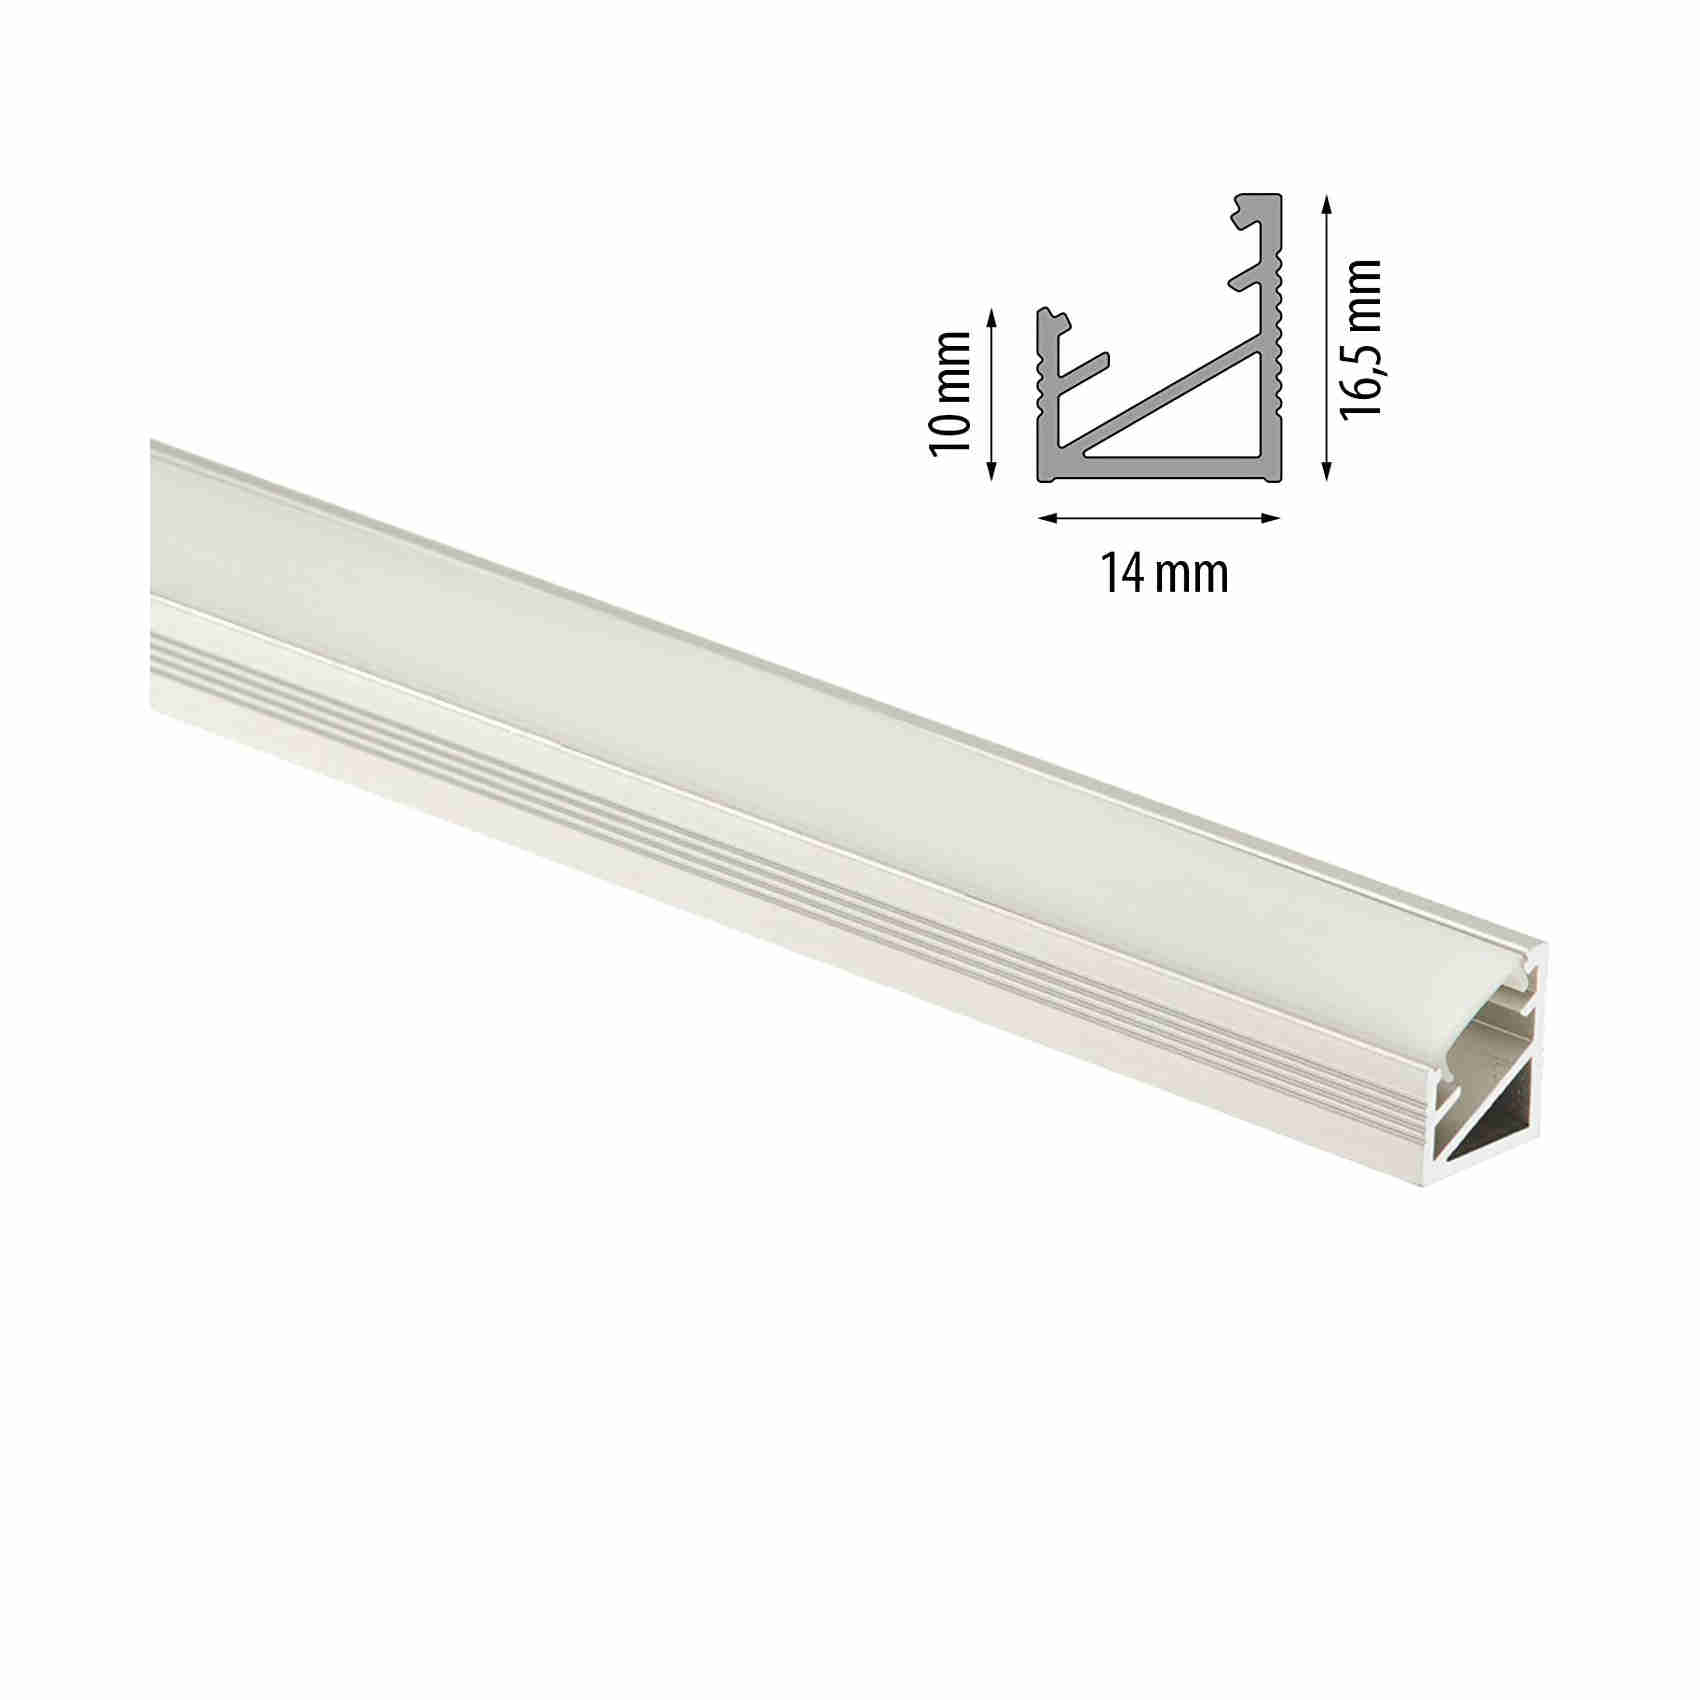 Cezar profilo angolare in alluminio anodizzato per strisce LED con  copertura in esecuzione, Argento, 1 Pezzi.